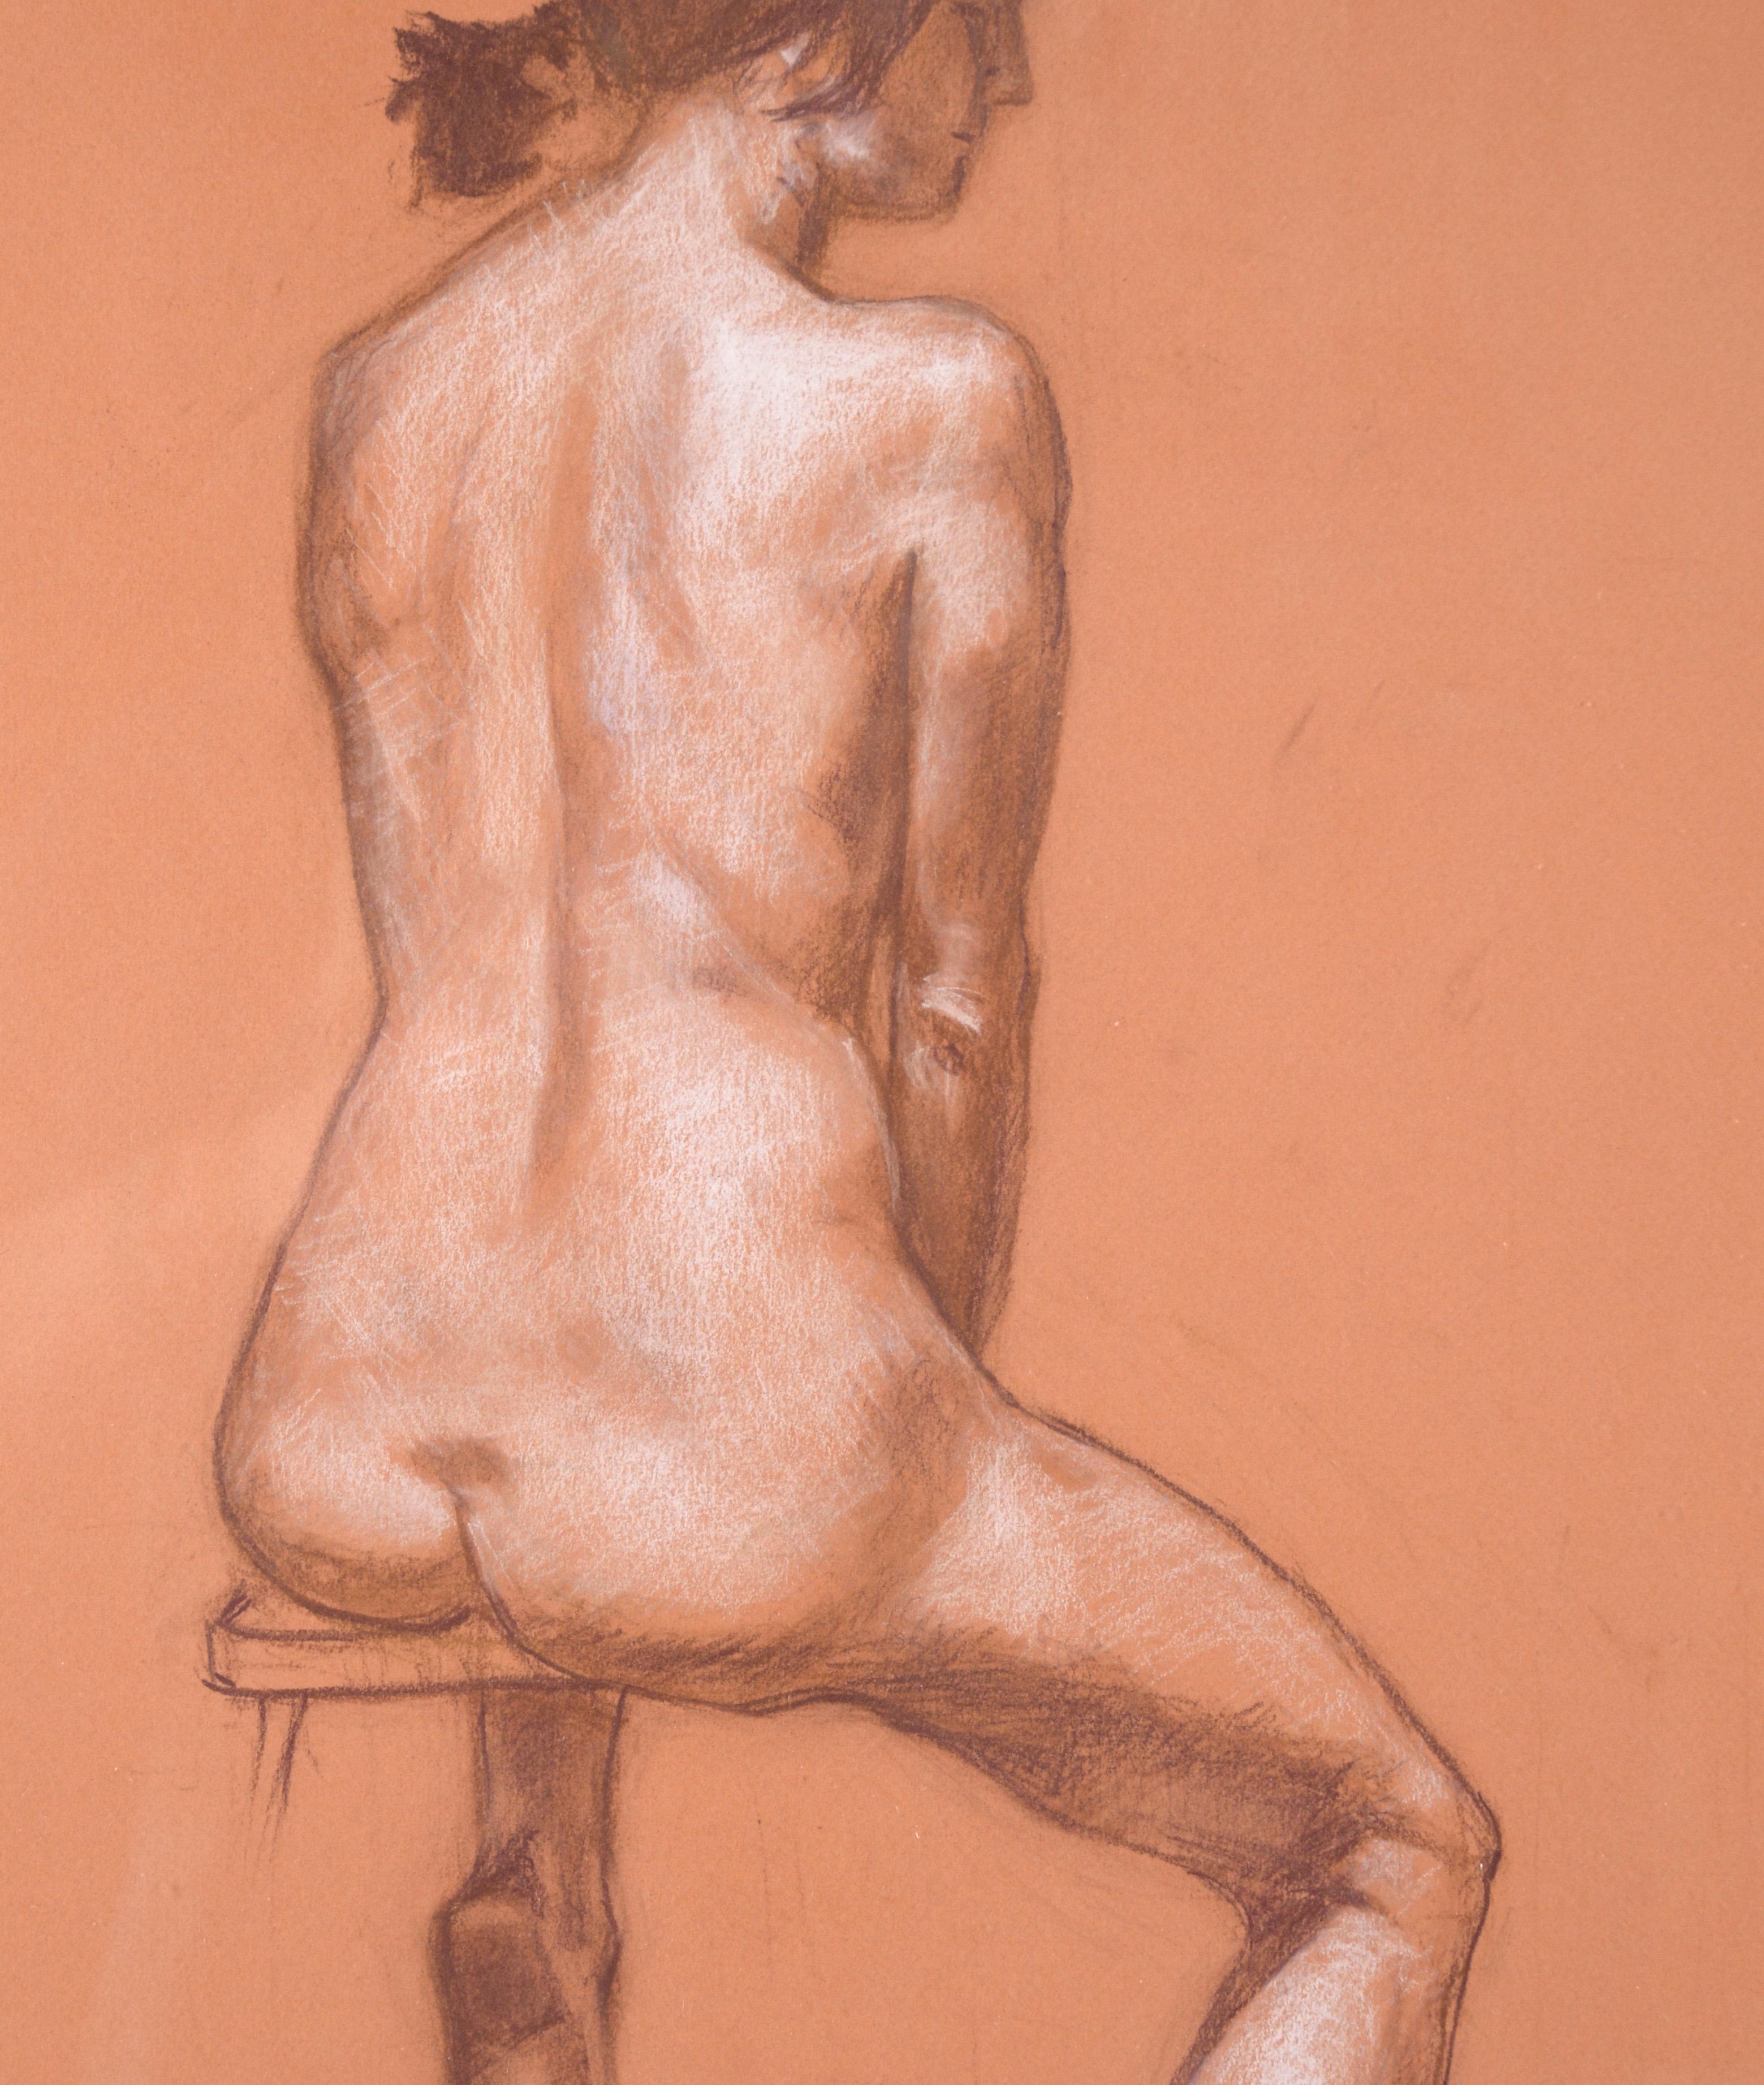 „Sitzende Figur“ Akt in Pastell und Farbstift auf Papier

Schöne moderne Zeichnung einer nackten Frau des Bay Area Künstlers George Wishon (Amerikaner, geb. 20. Jahrhundert). Das Modell ist sitzend, dem Betrachter abgewandt, schaut aber nach rechts.